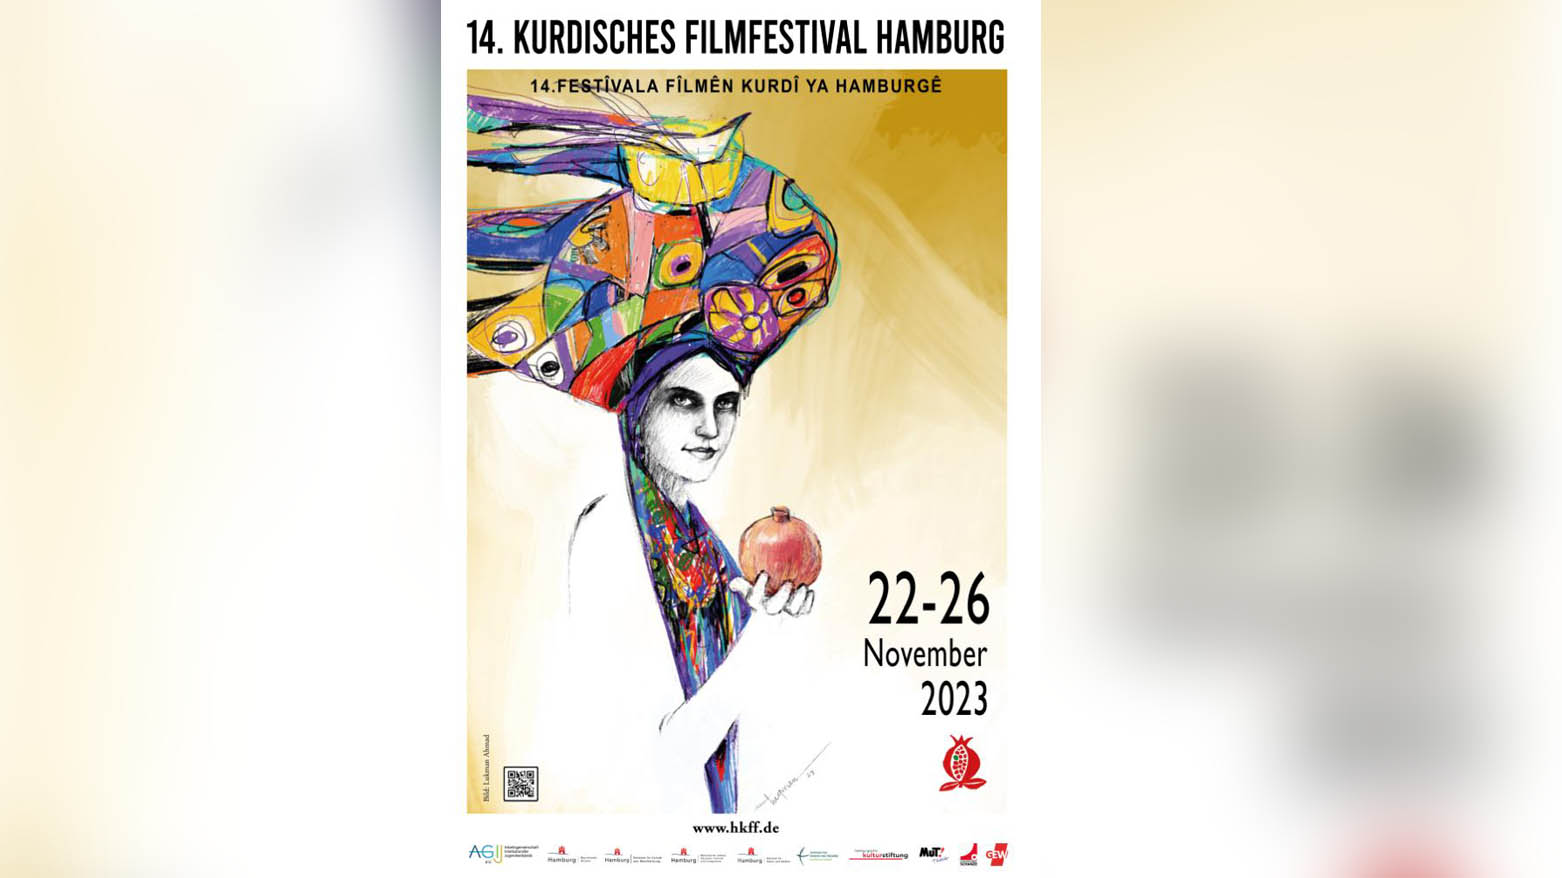 پوستر چهاردهمین جشنواره فیلم کوردی هامبورگ